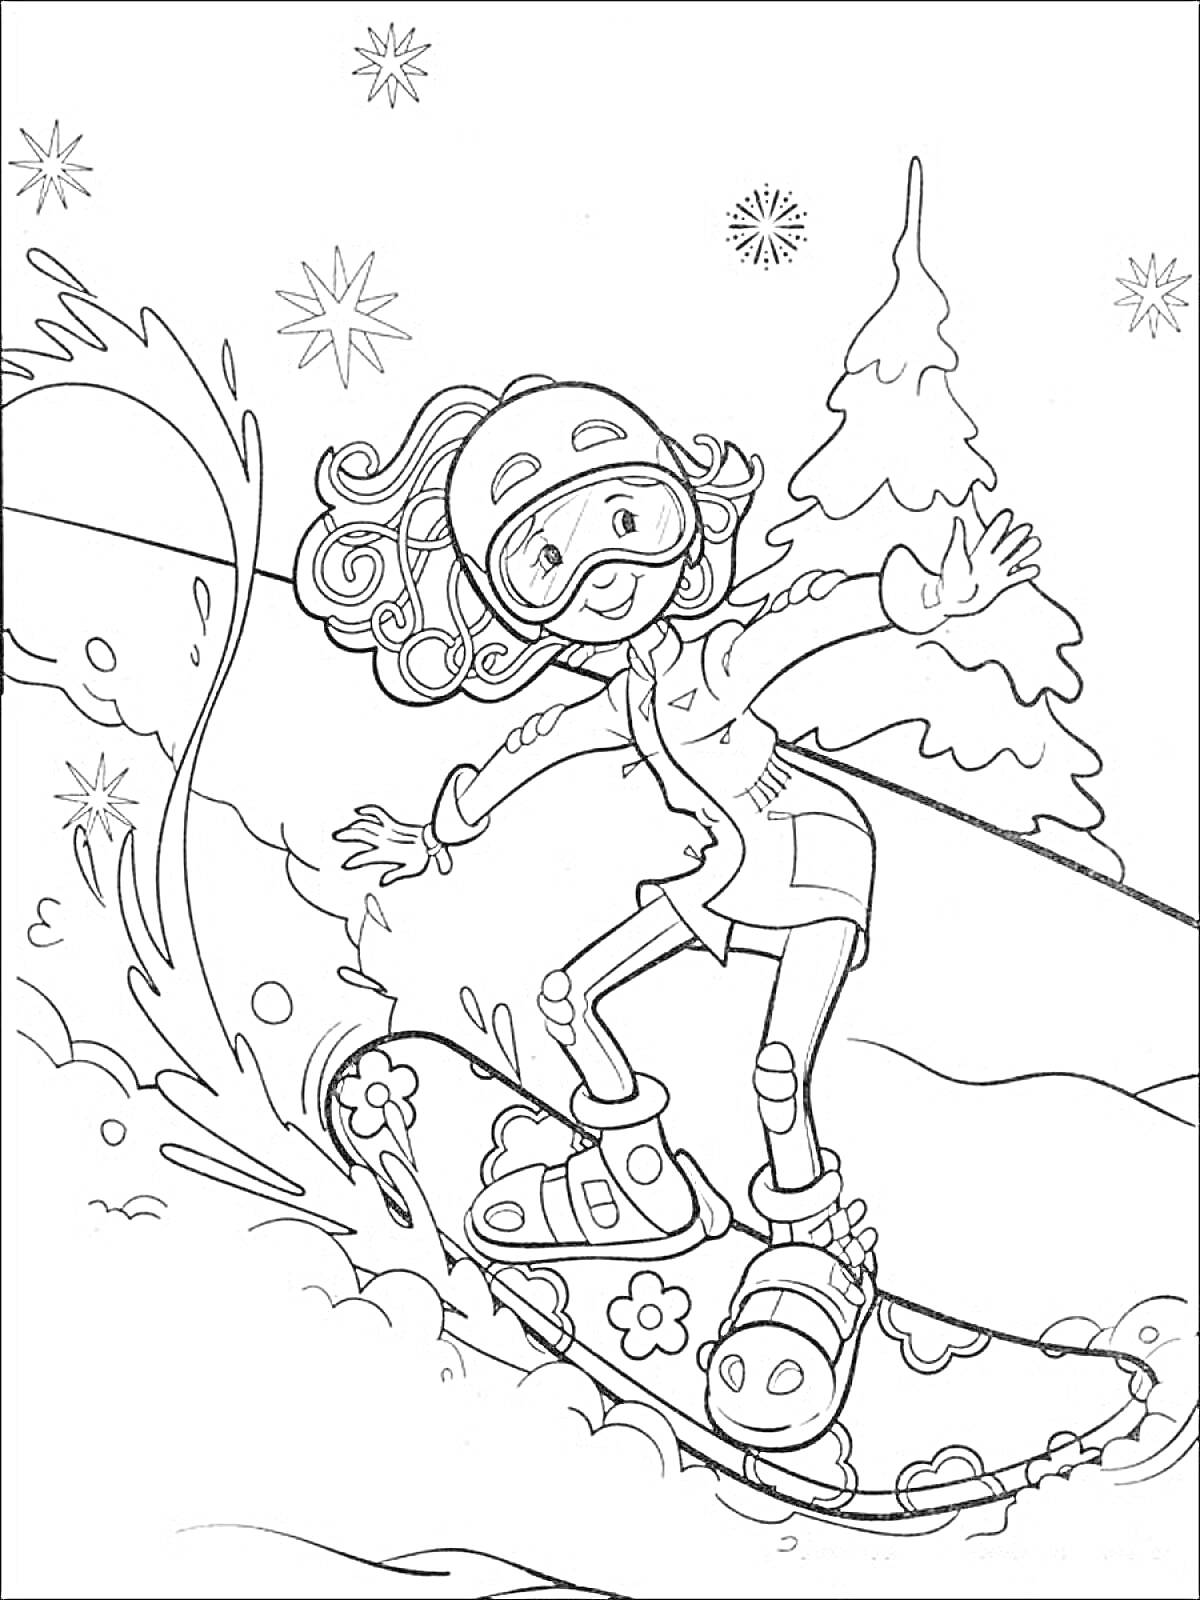 Раскраска Девочка на сноуборде, едущая по снежной трассе, с деревьями и снежинками на фоне.